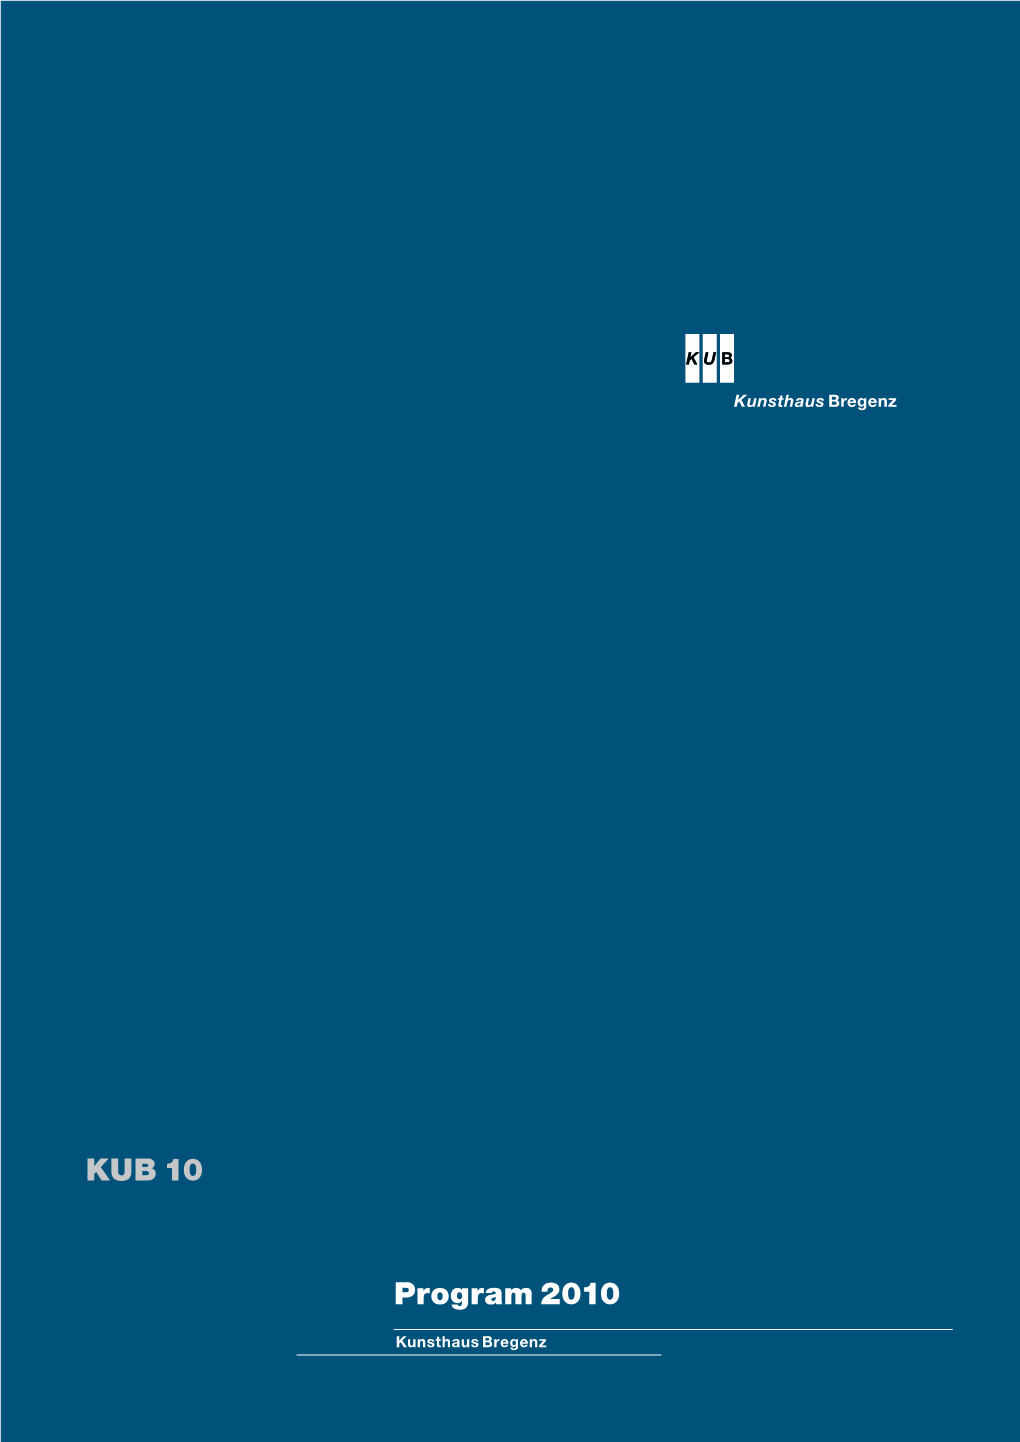 KUB 10 Program 2010